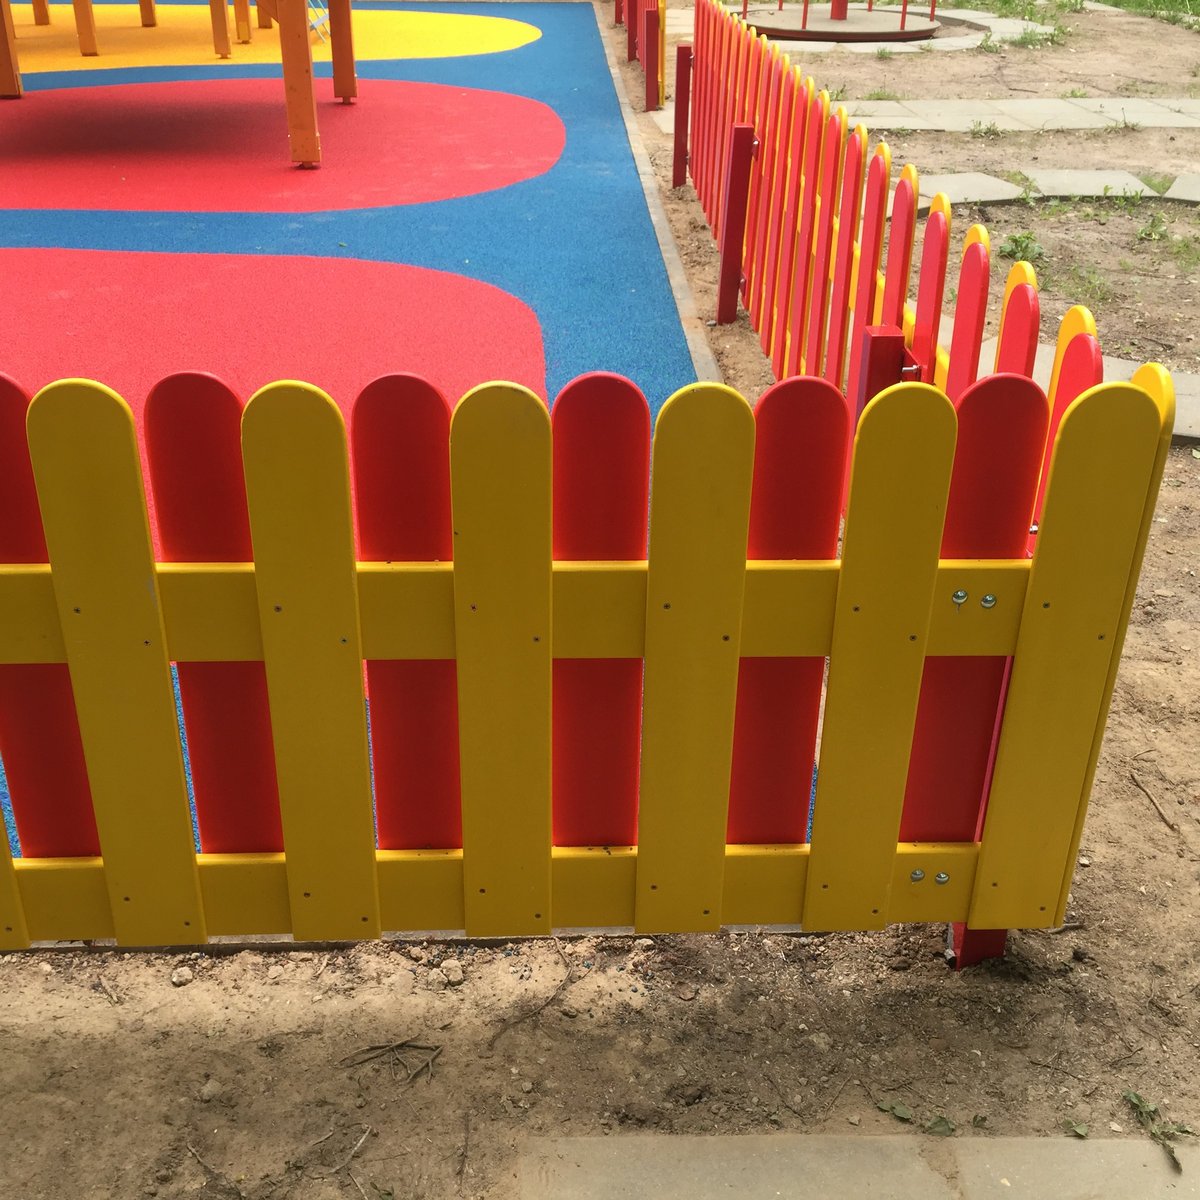 Забор в детском саду